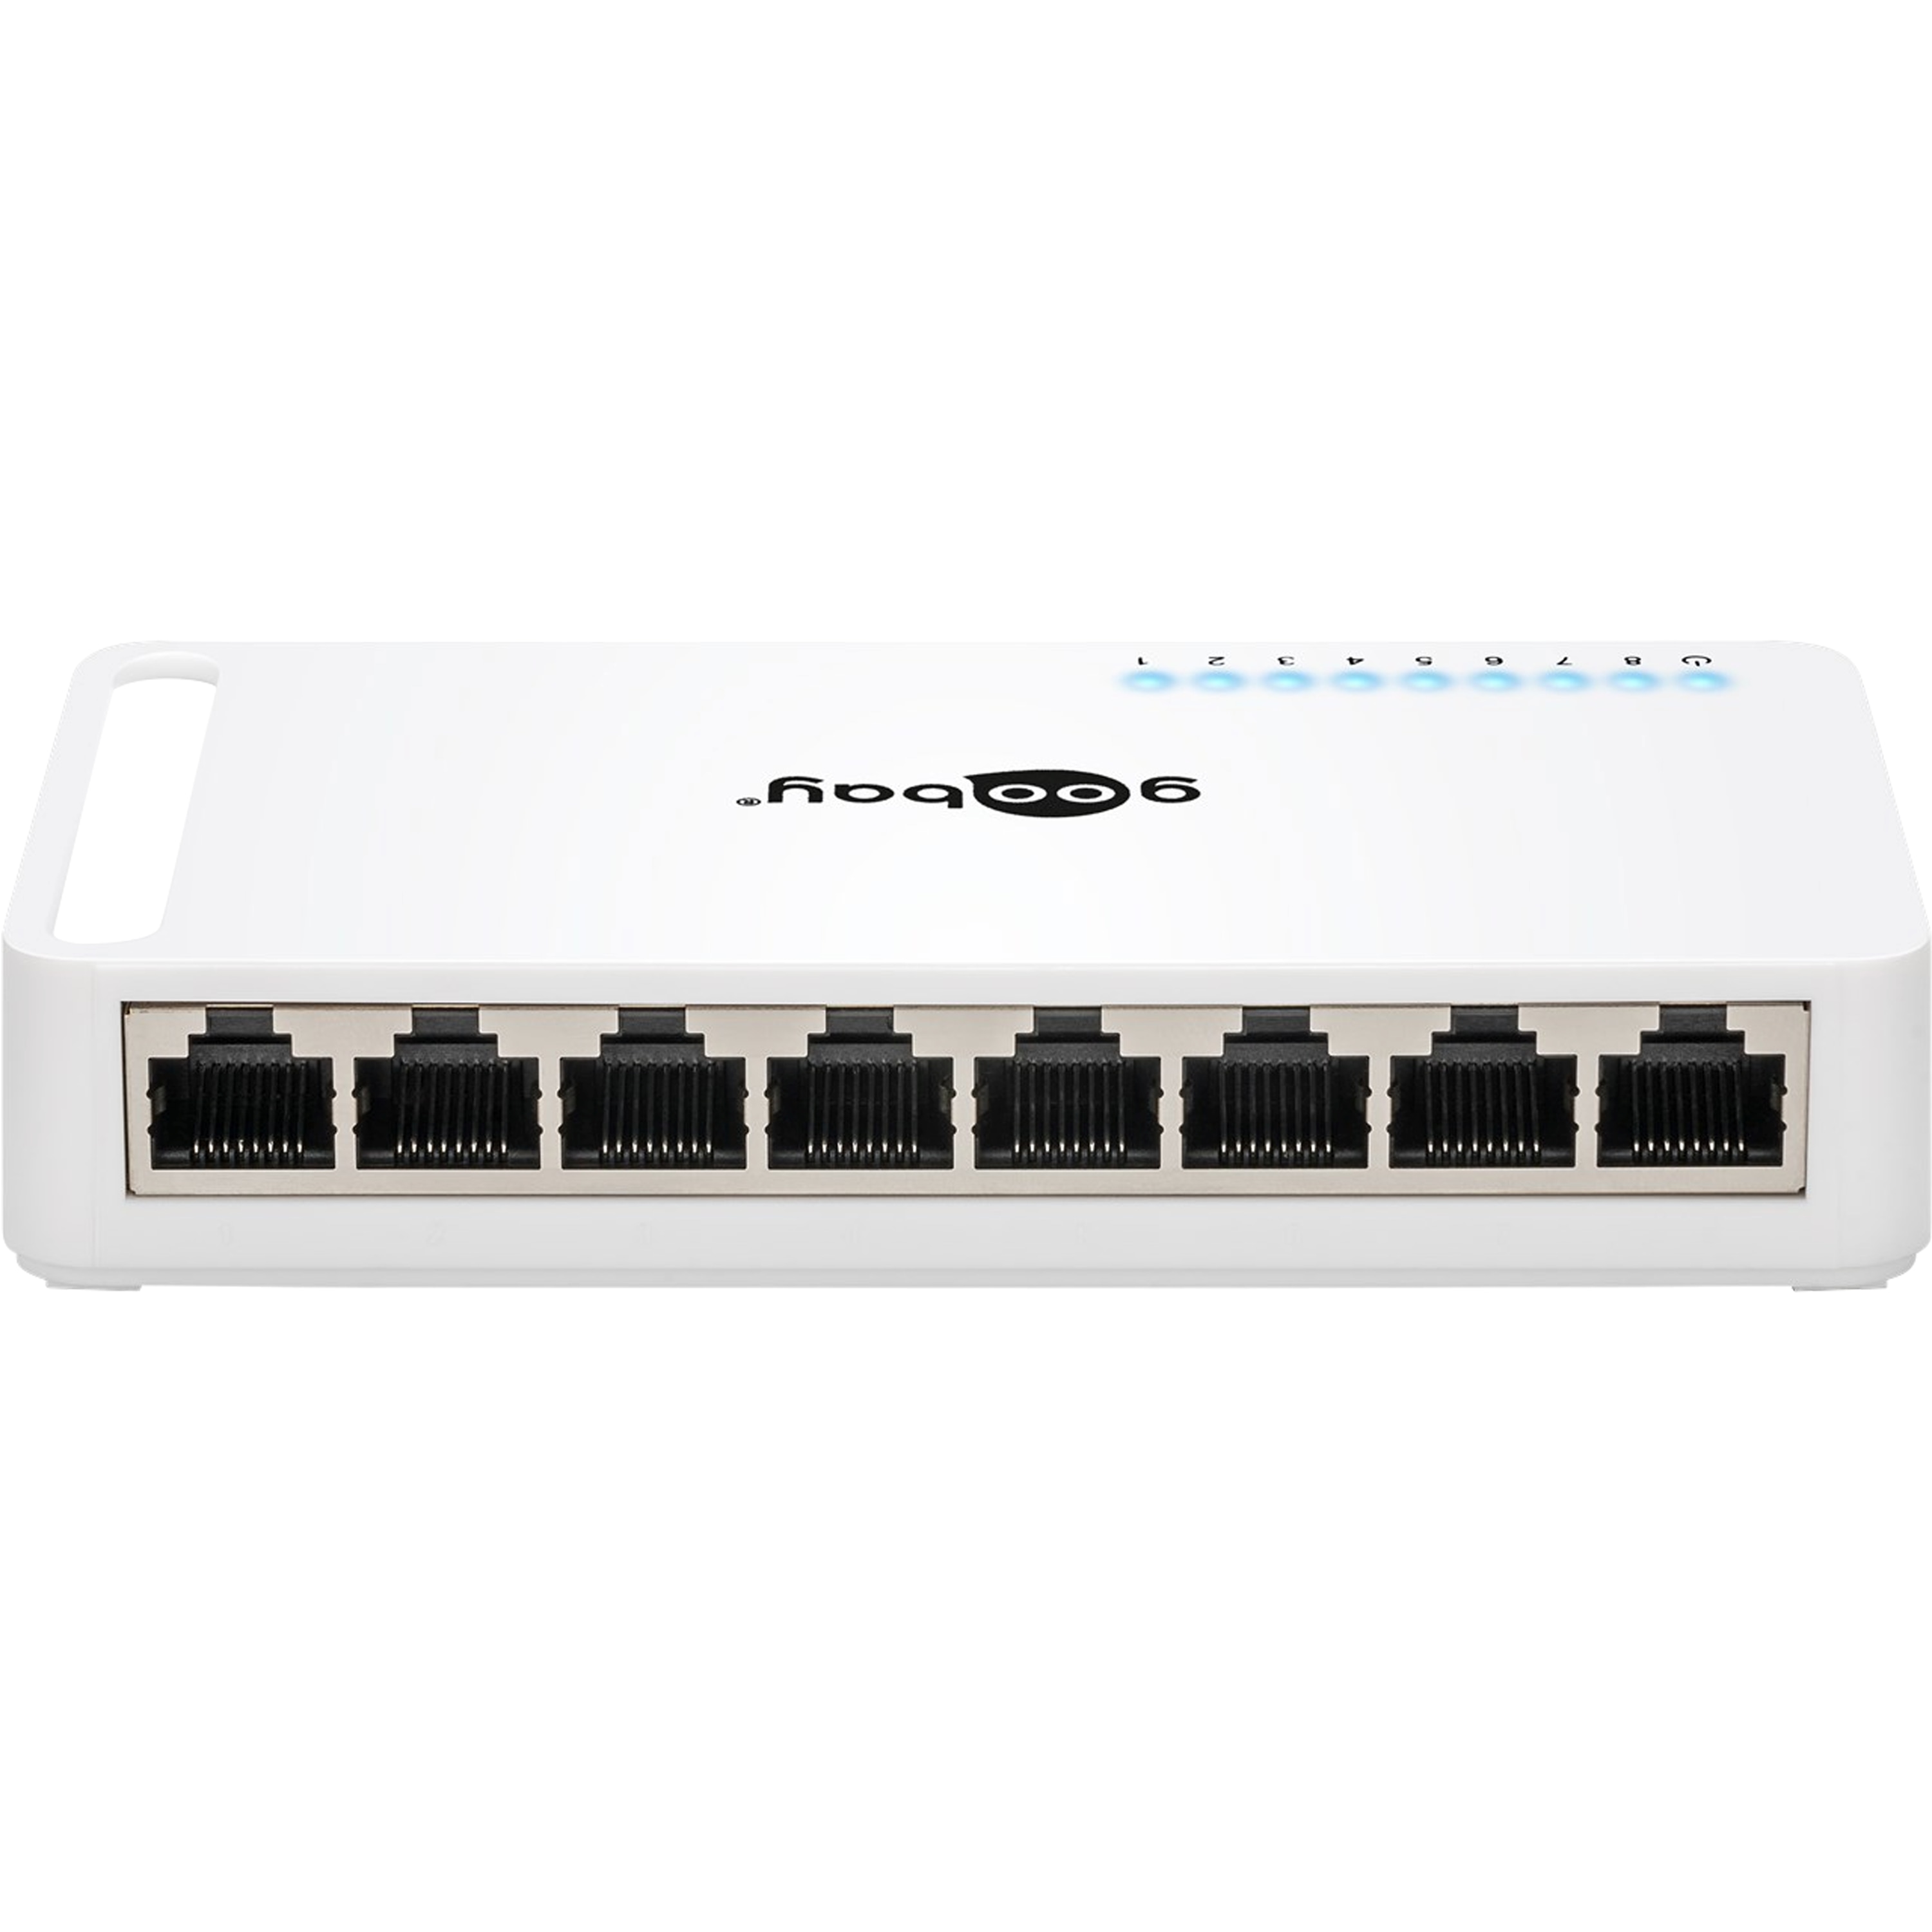 GOOBAY 8 Port Gigabit Ethernet Netzwerk-Switch, mit 8 x RJ45-Anschlüssen 10/100/1000 MBit/s, Green-Power Ethernet, unterstützt Auto-Negotiation Auto MDI/MDIX, Plug & Play